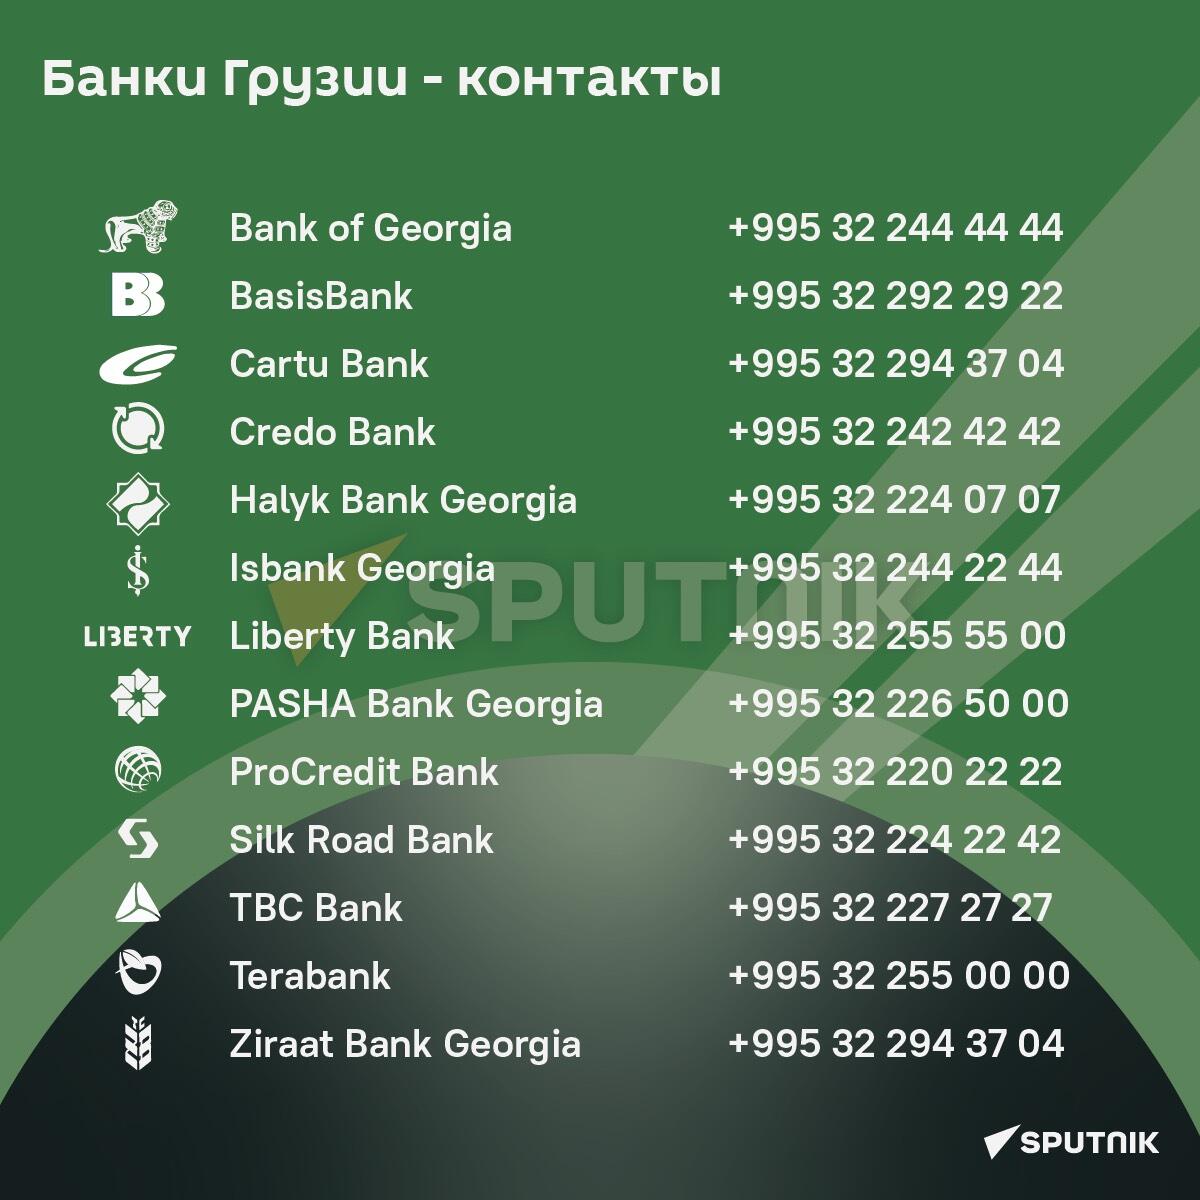 Банки Грузии - контакты - Sputnik Грузия